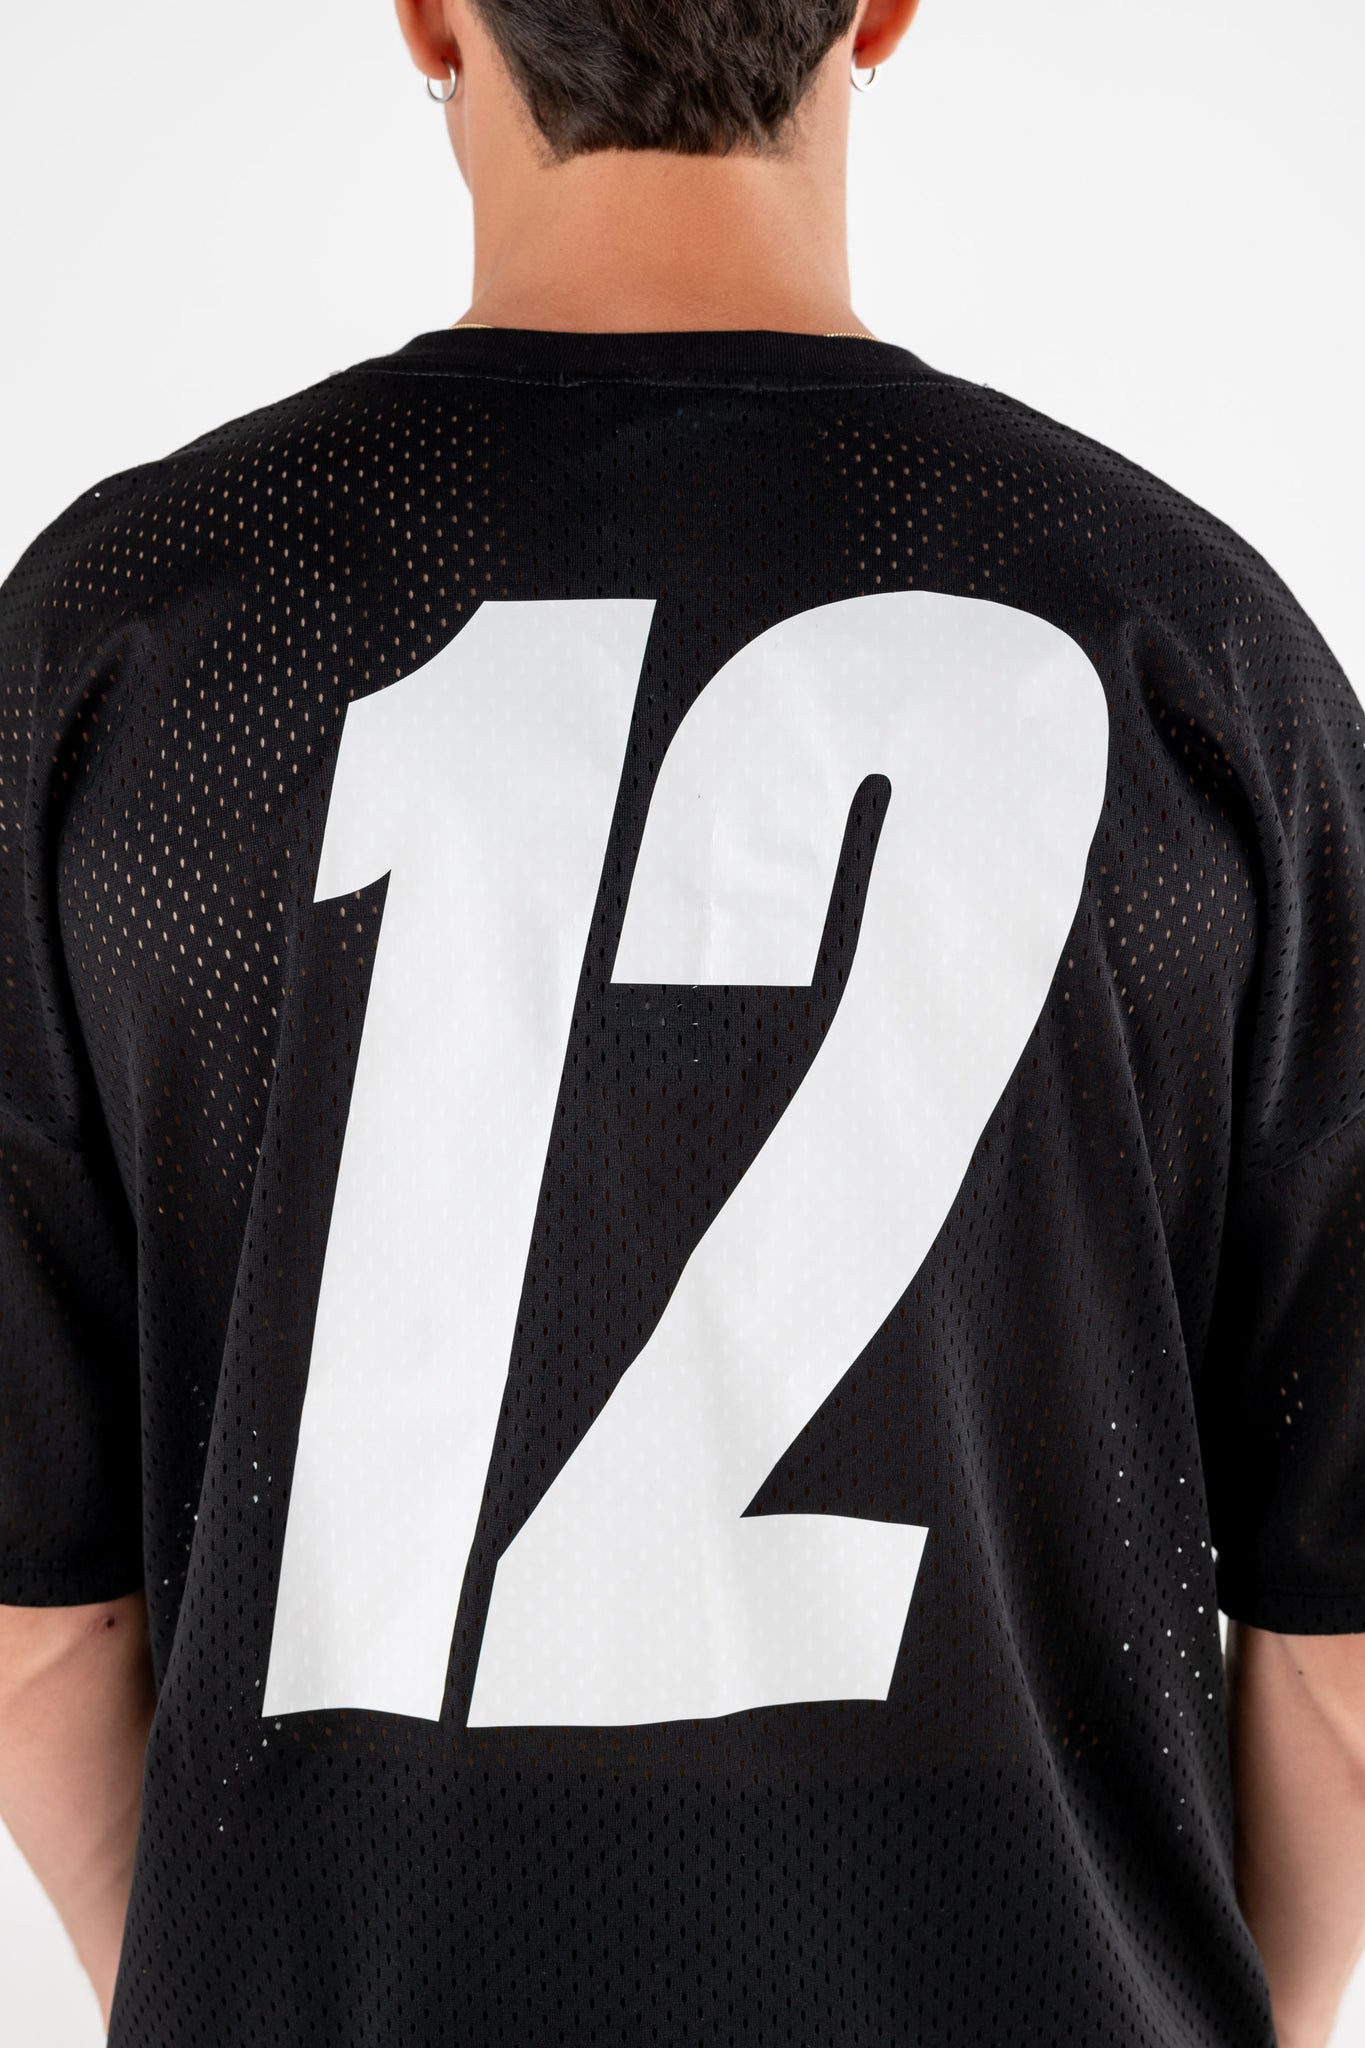 Over T-Shirt “FORSUMMER” Soccer Black